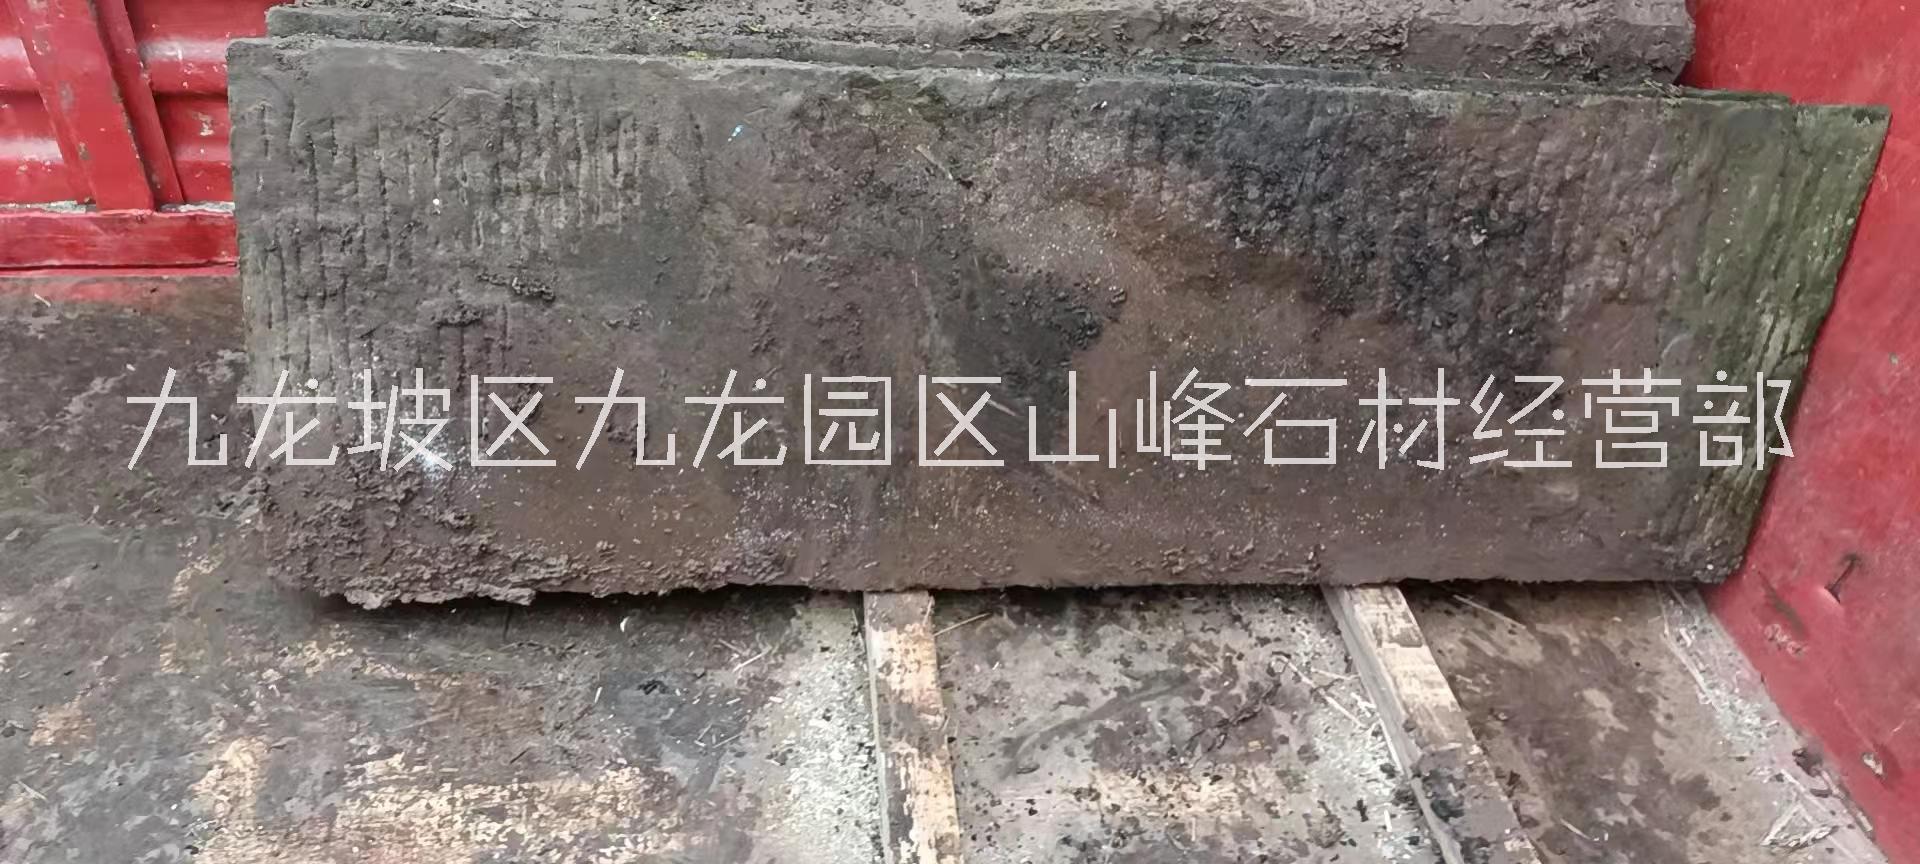 重庆凹凸面老石板矿山挂牌 大型老石板储量察探图片